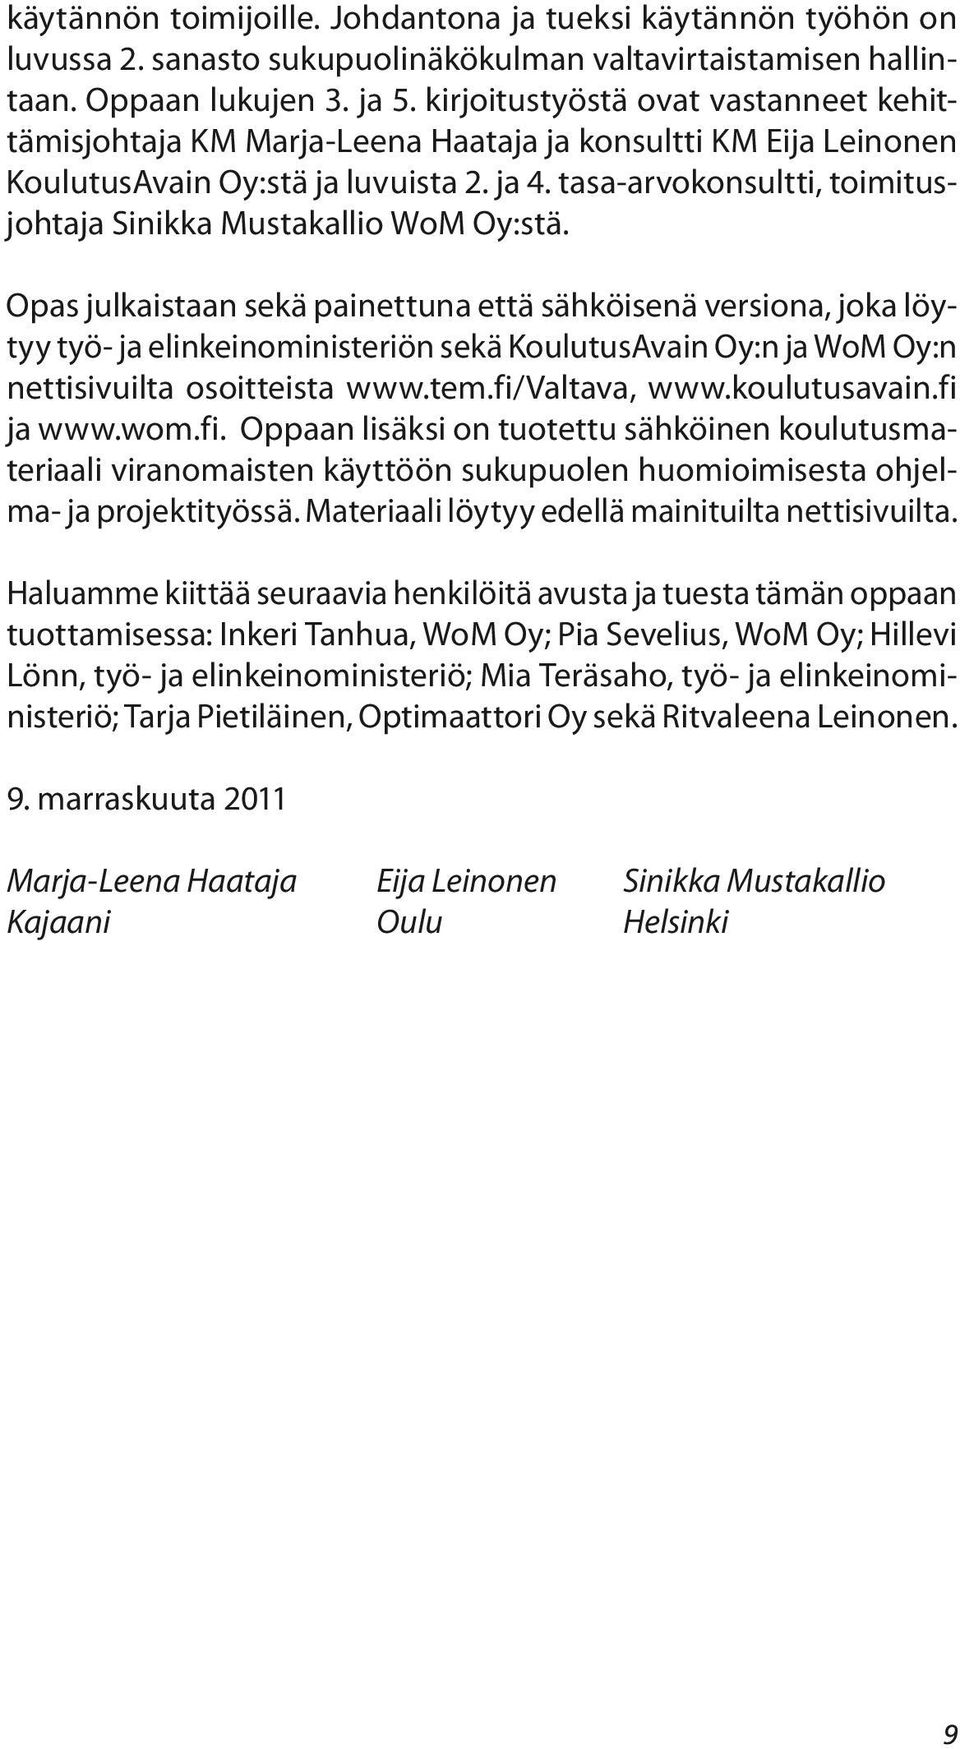 tasa-arvokonsultti, toimitusjohtaja Sinikka Mustakallio WoM Oy:stä.